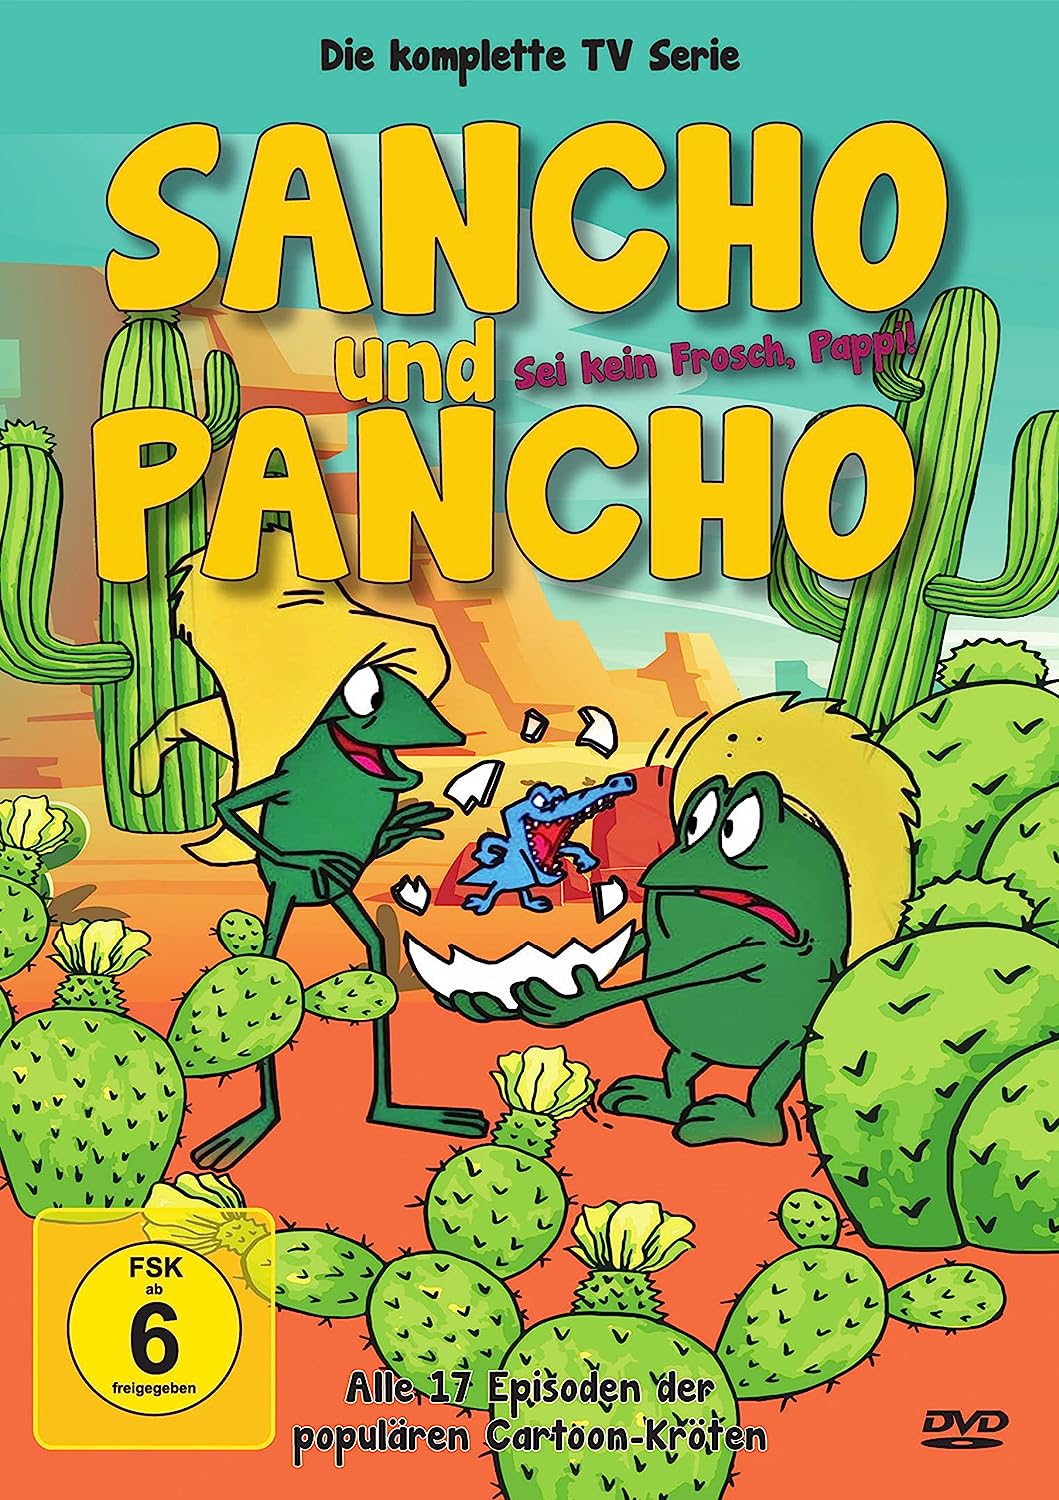 Sancho und Pancho – Die komplette Zeichentrick-Serie [DVD]